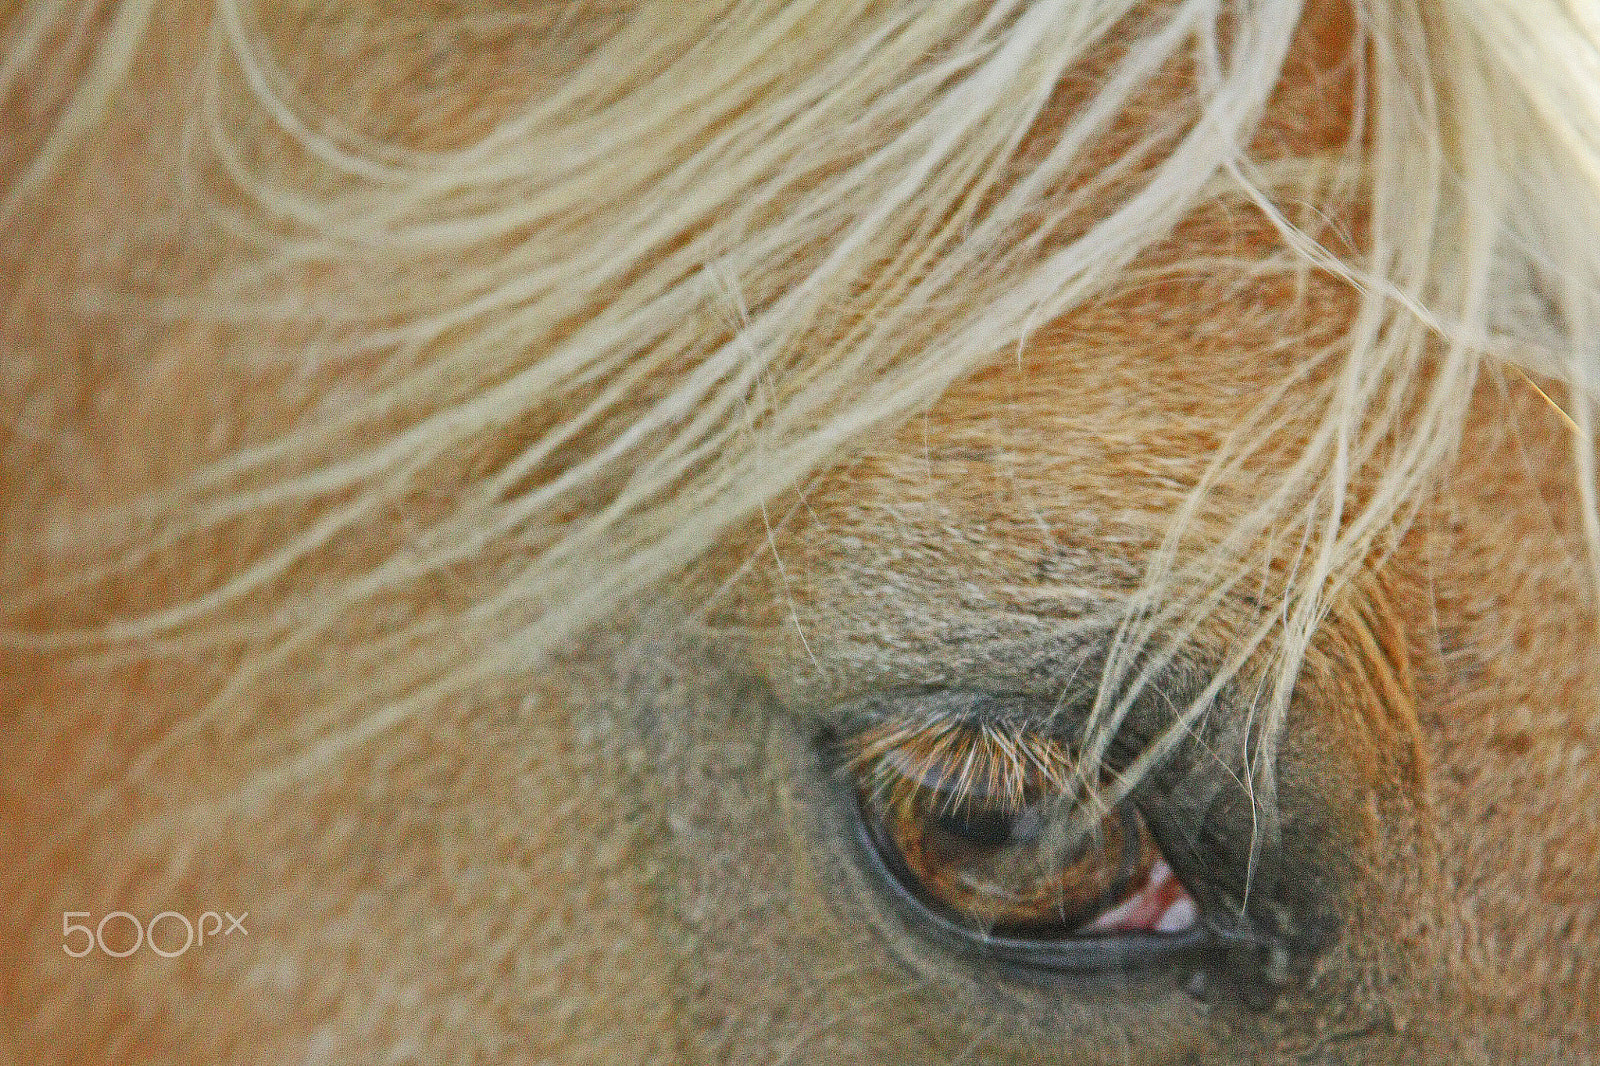 Canon EOS 450D (EOS Rebel XSi / EOS Kiss X2) sample photo. Horse eye photography